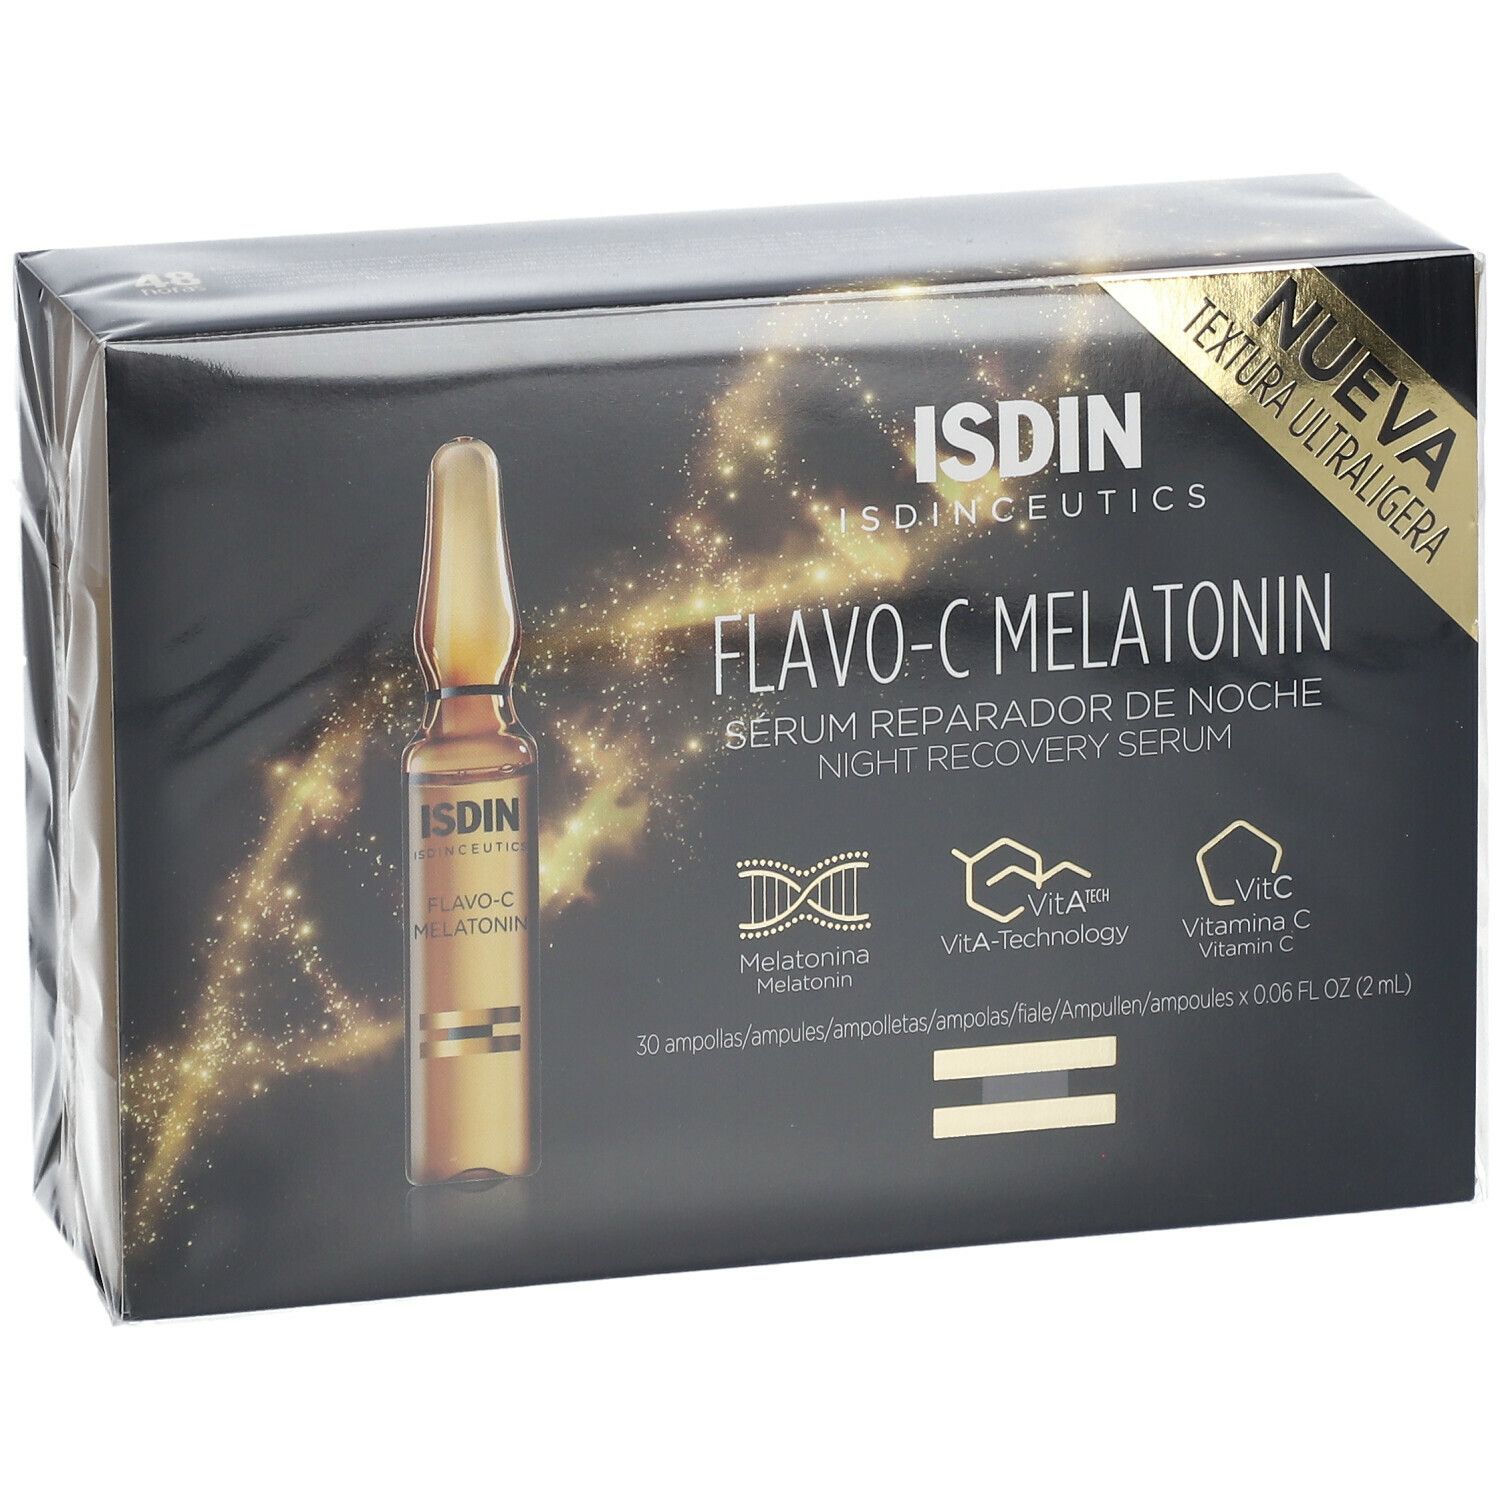 ISDIN Isdinceutics Flavo-C Melatonin Sérum réparateur de nuit